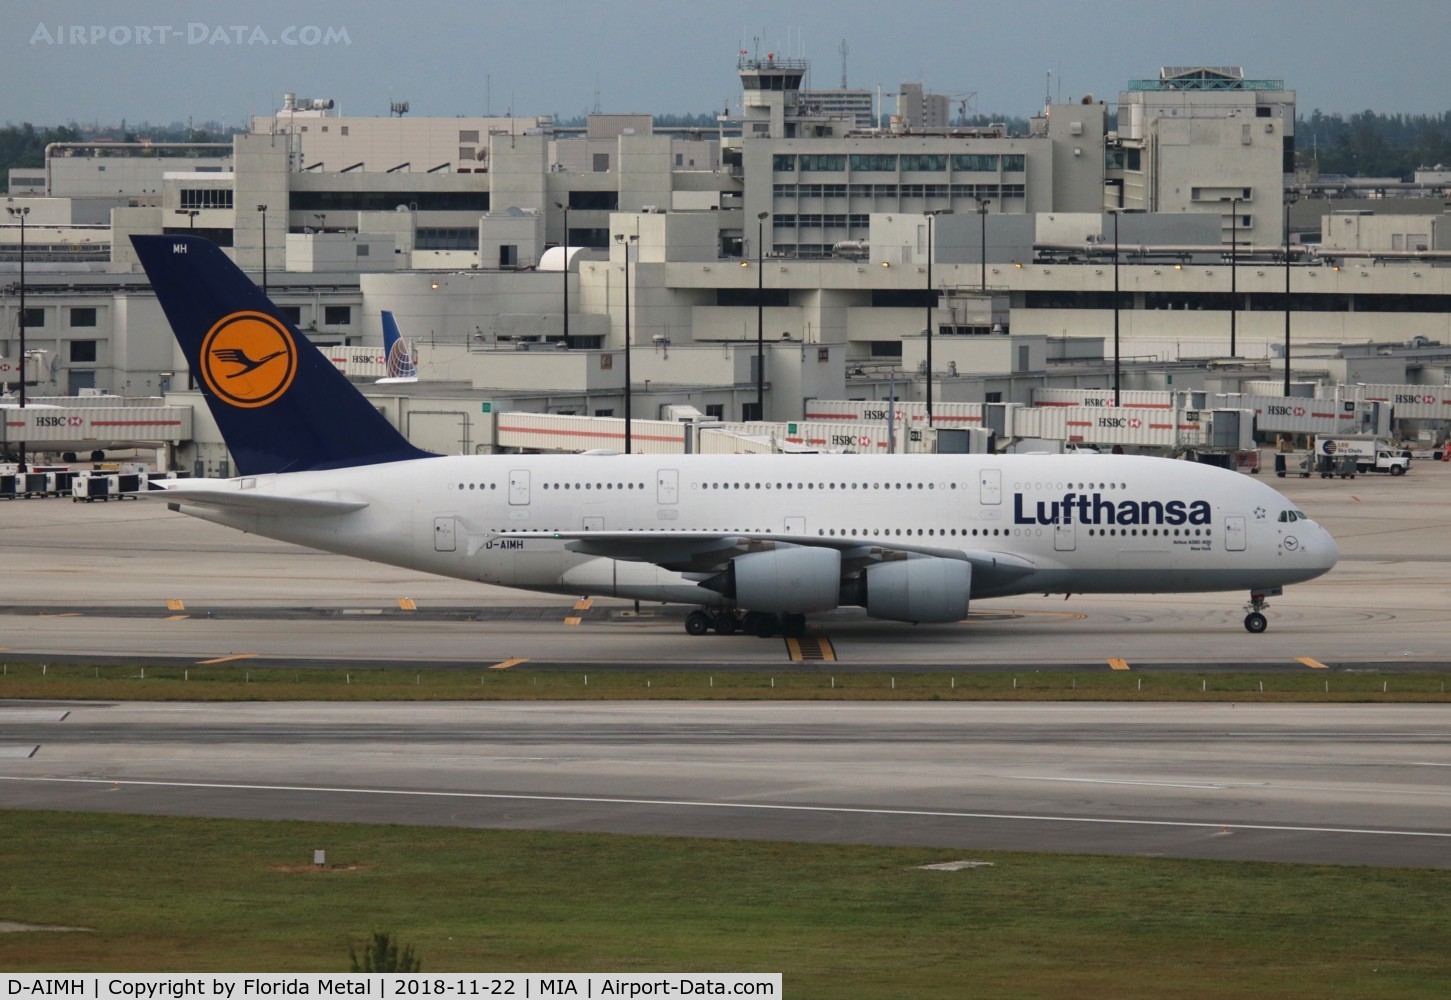 D-AIMH, 2010 Airbus A380-841 C/N 070, Lufthansa